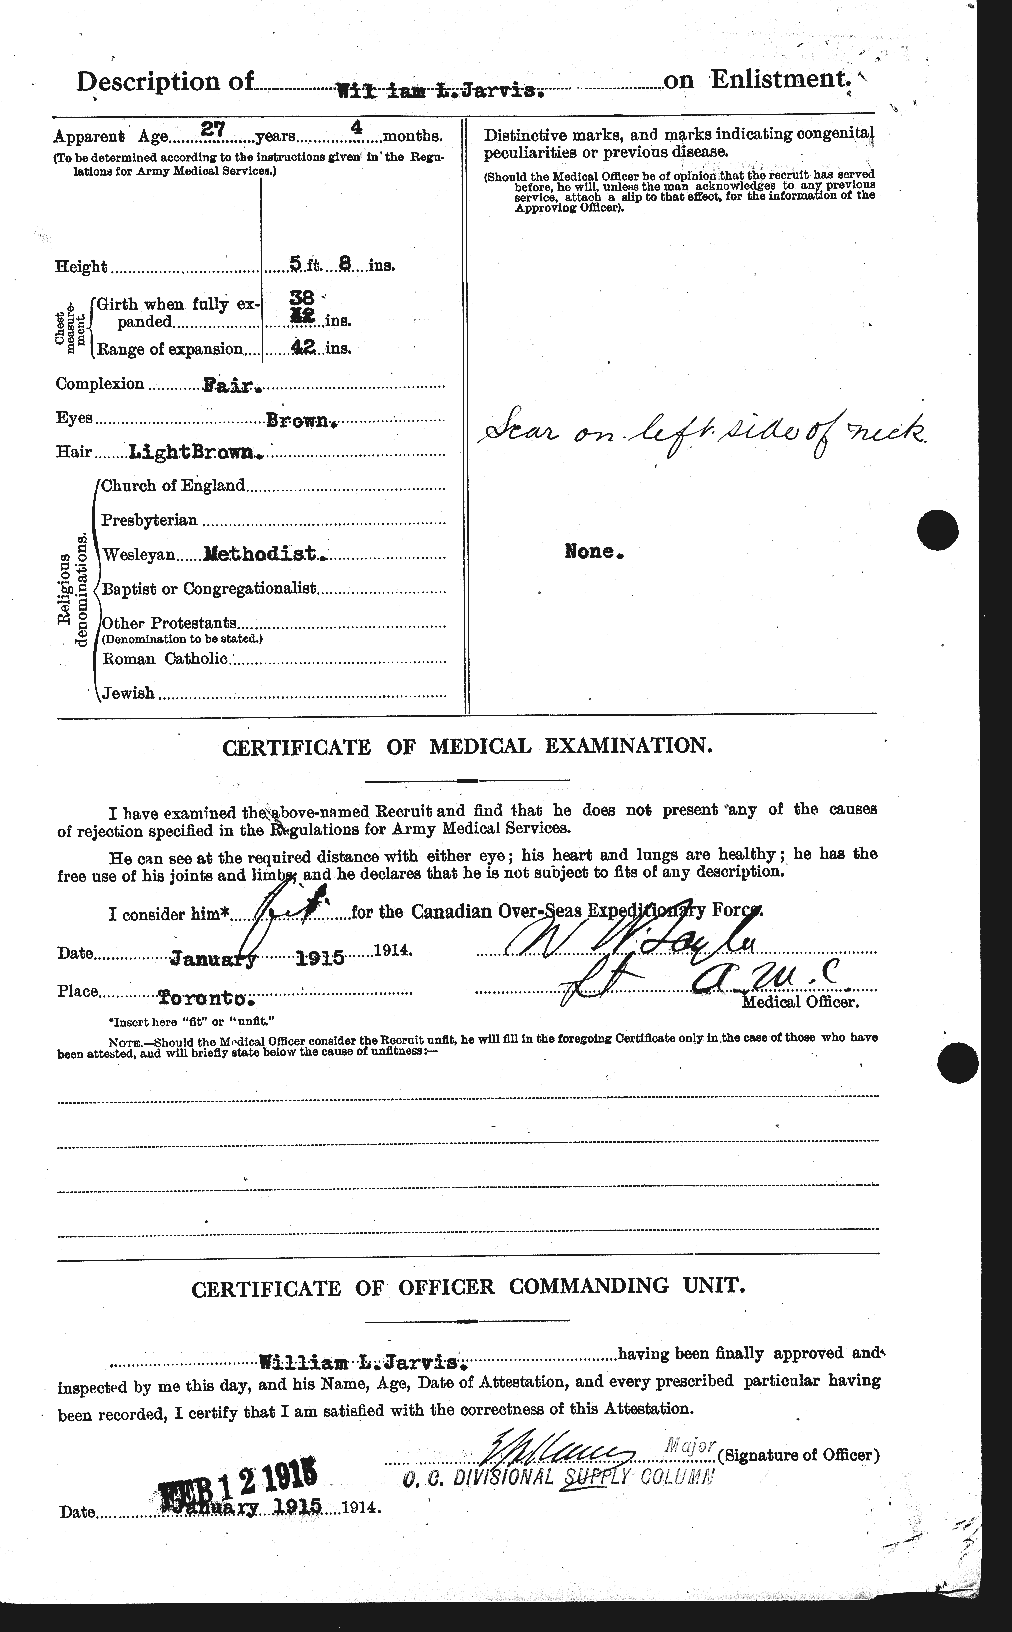 Dossiers du Personnel de la Première Guerre mondiale - CEC 415891b